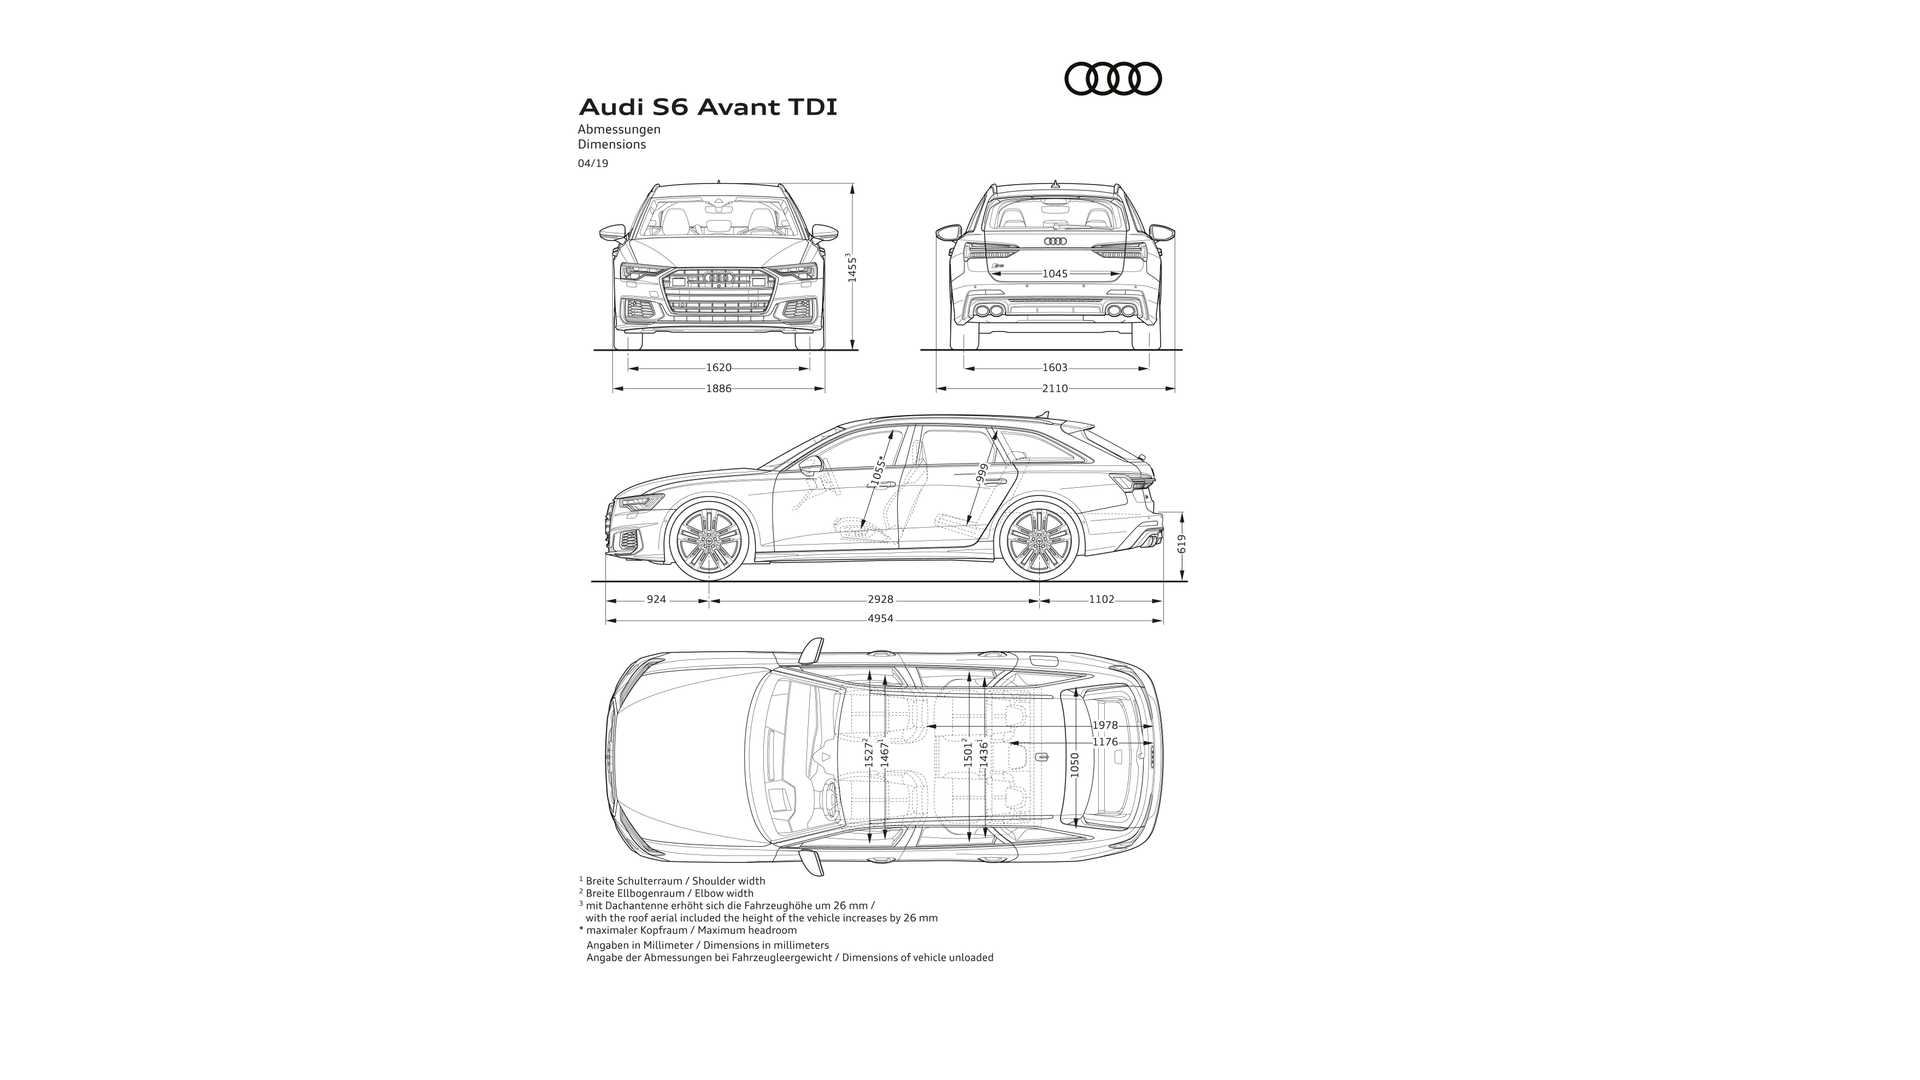 2019 Audi S6 Avant TDI Dimensions Wallpapers #26 of 26